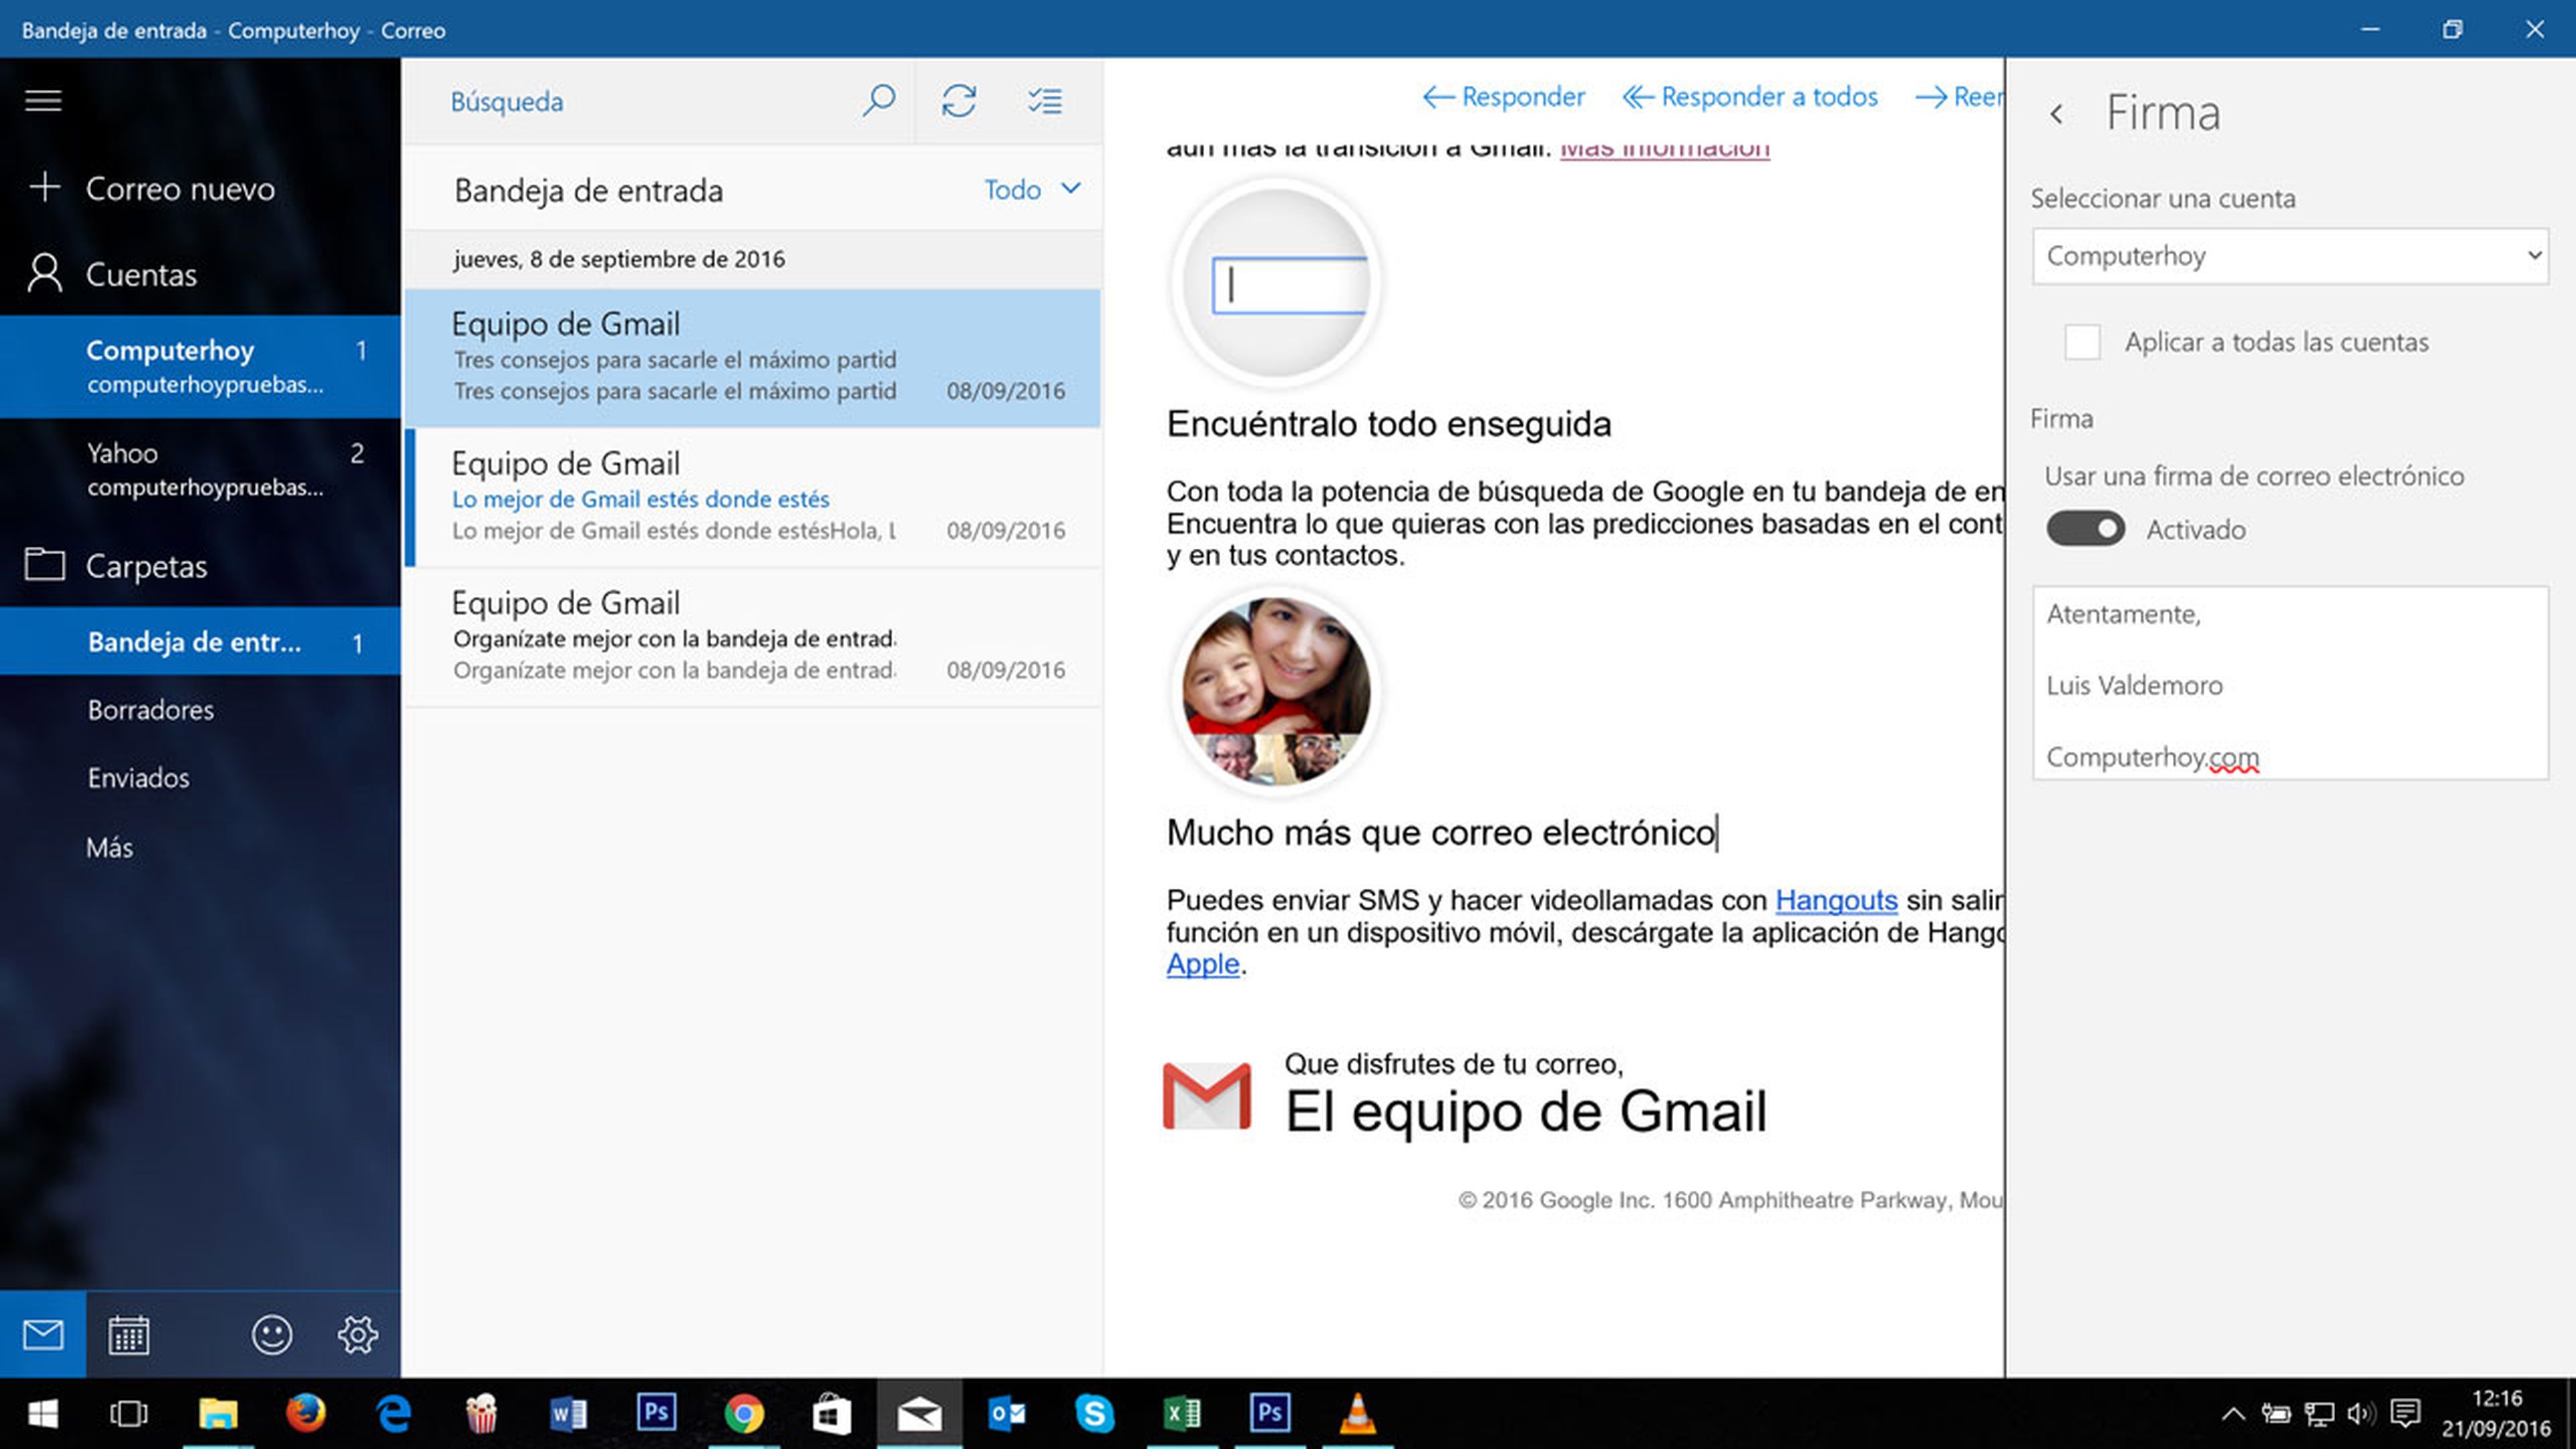 Configuración de firma en la aplicación de correo de windows 10